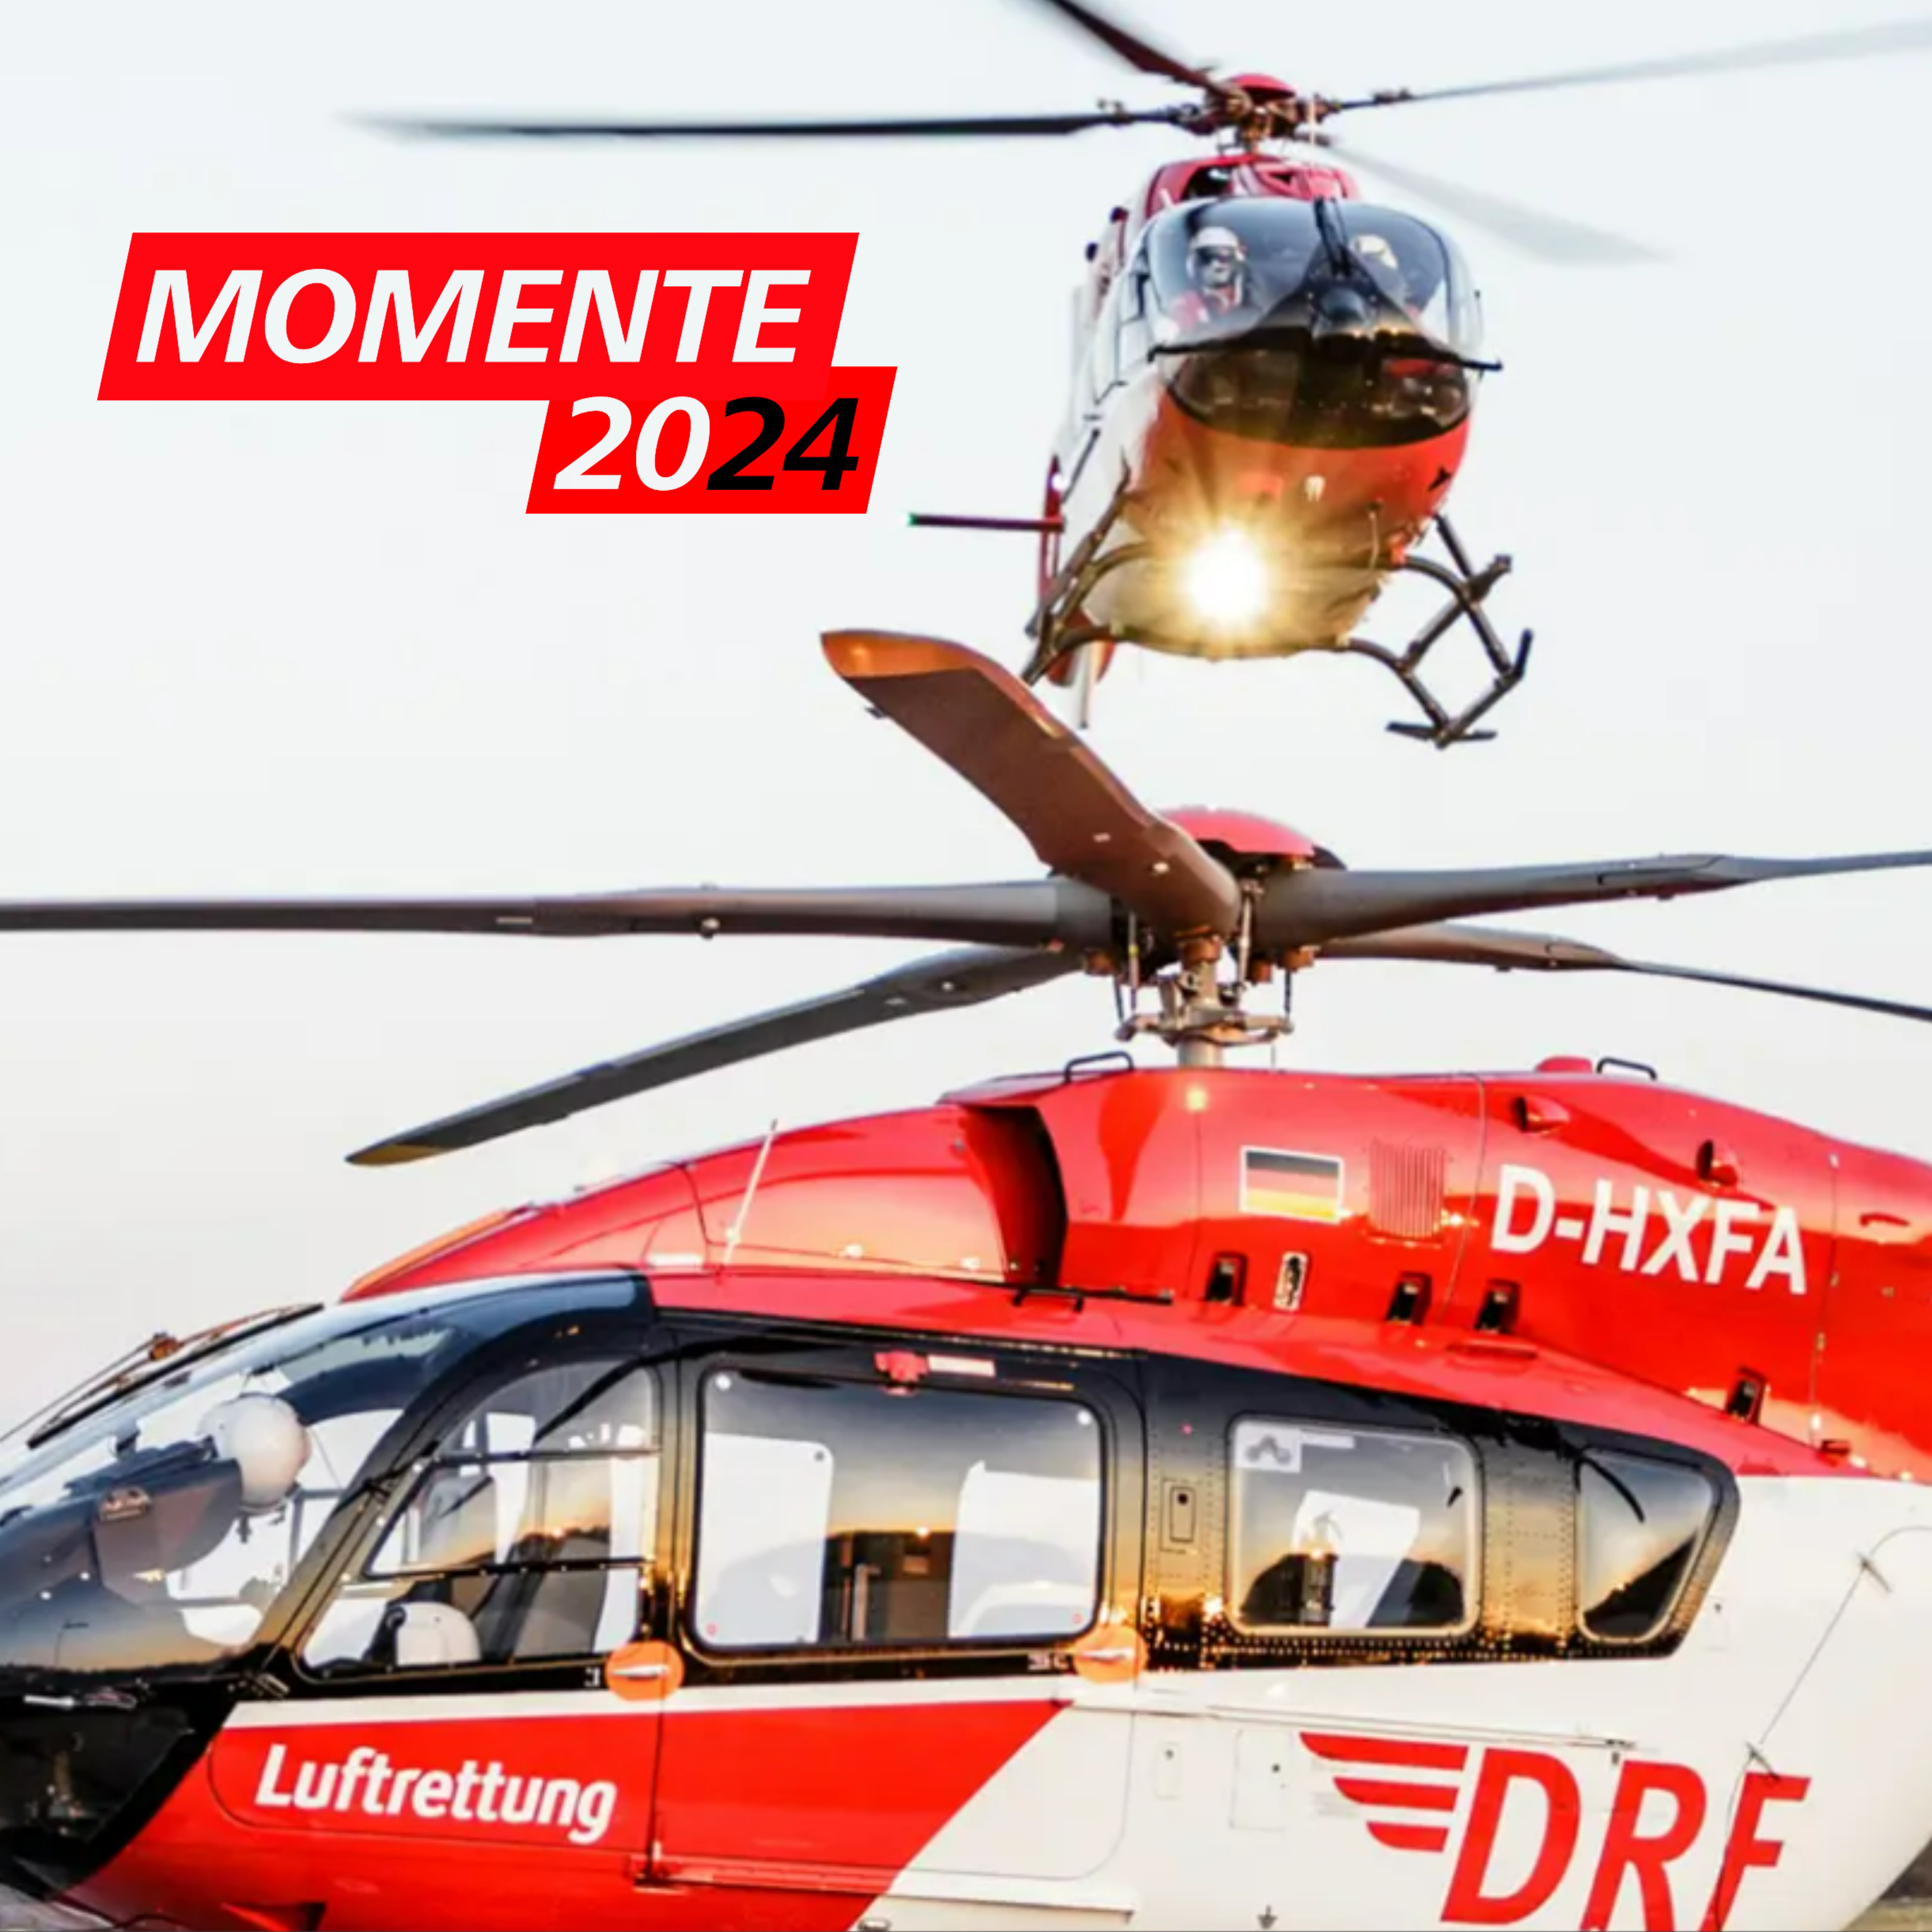 Geschichten, Menschen, Emotionen – der digitale Jahreskalender der DRF Luftrettung ist jetzt verfügbar! 